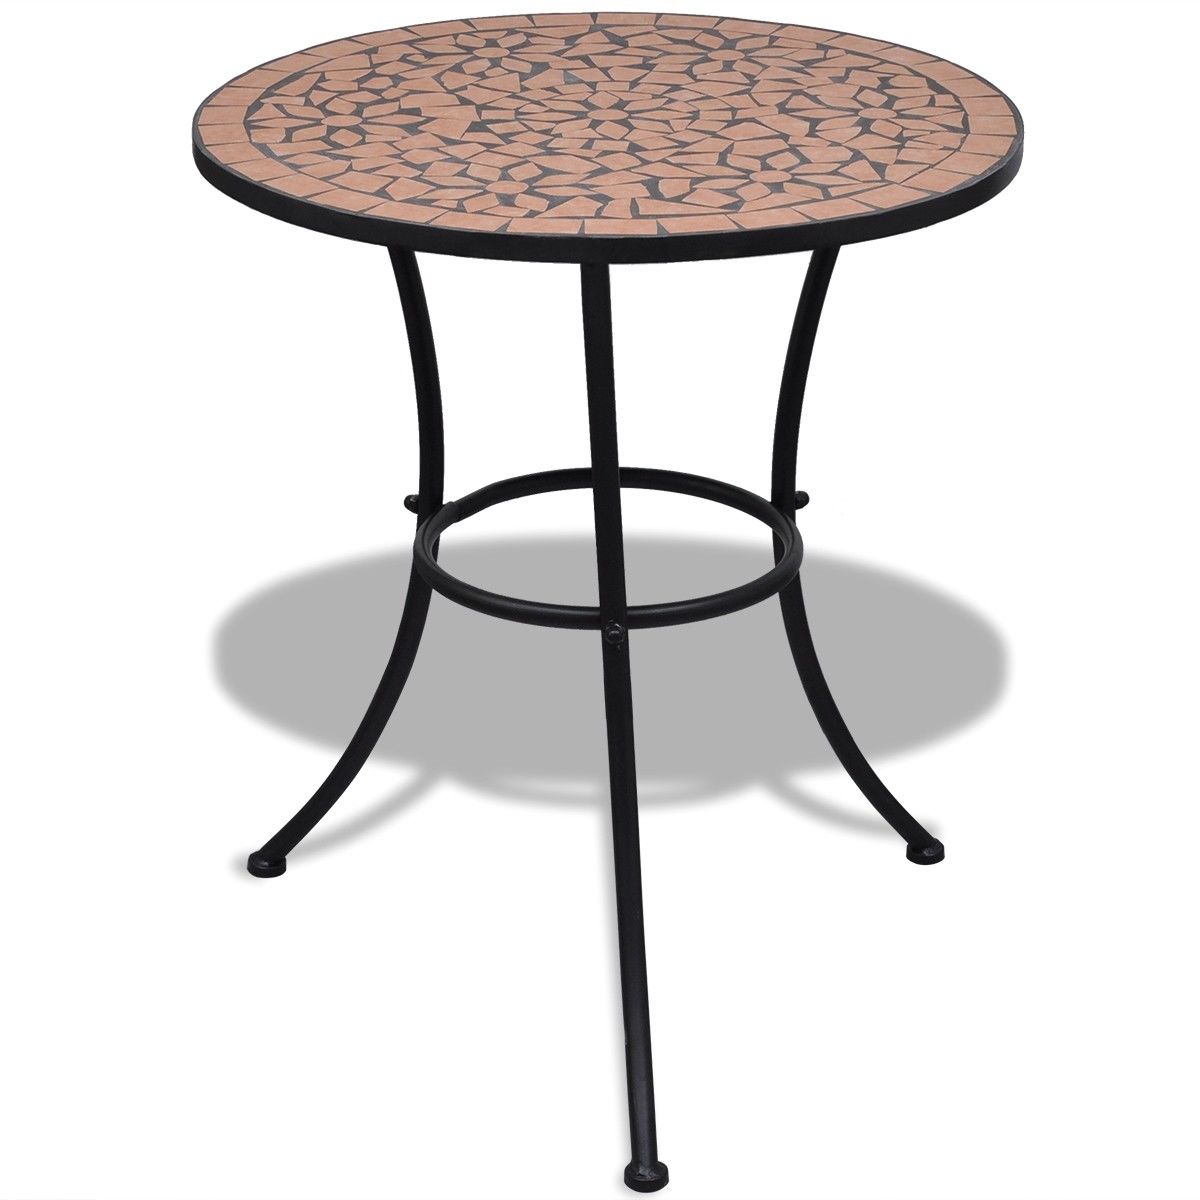 Mozaikový stůl 60 cm, bistro stolek, barva cihlová